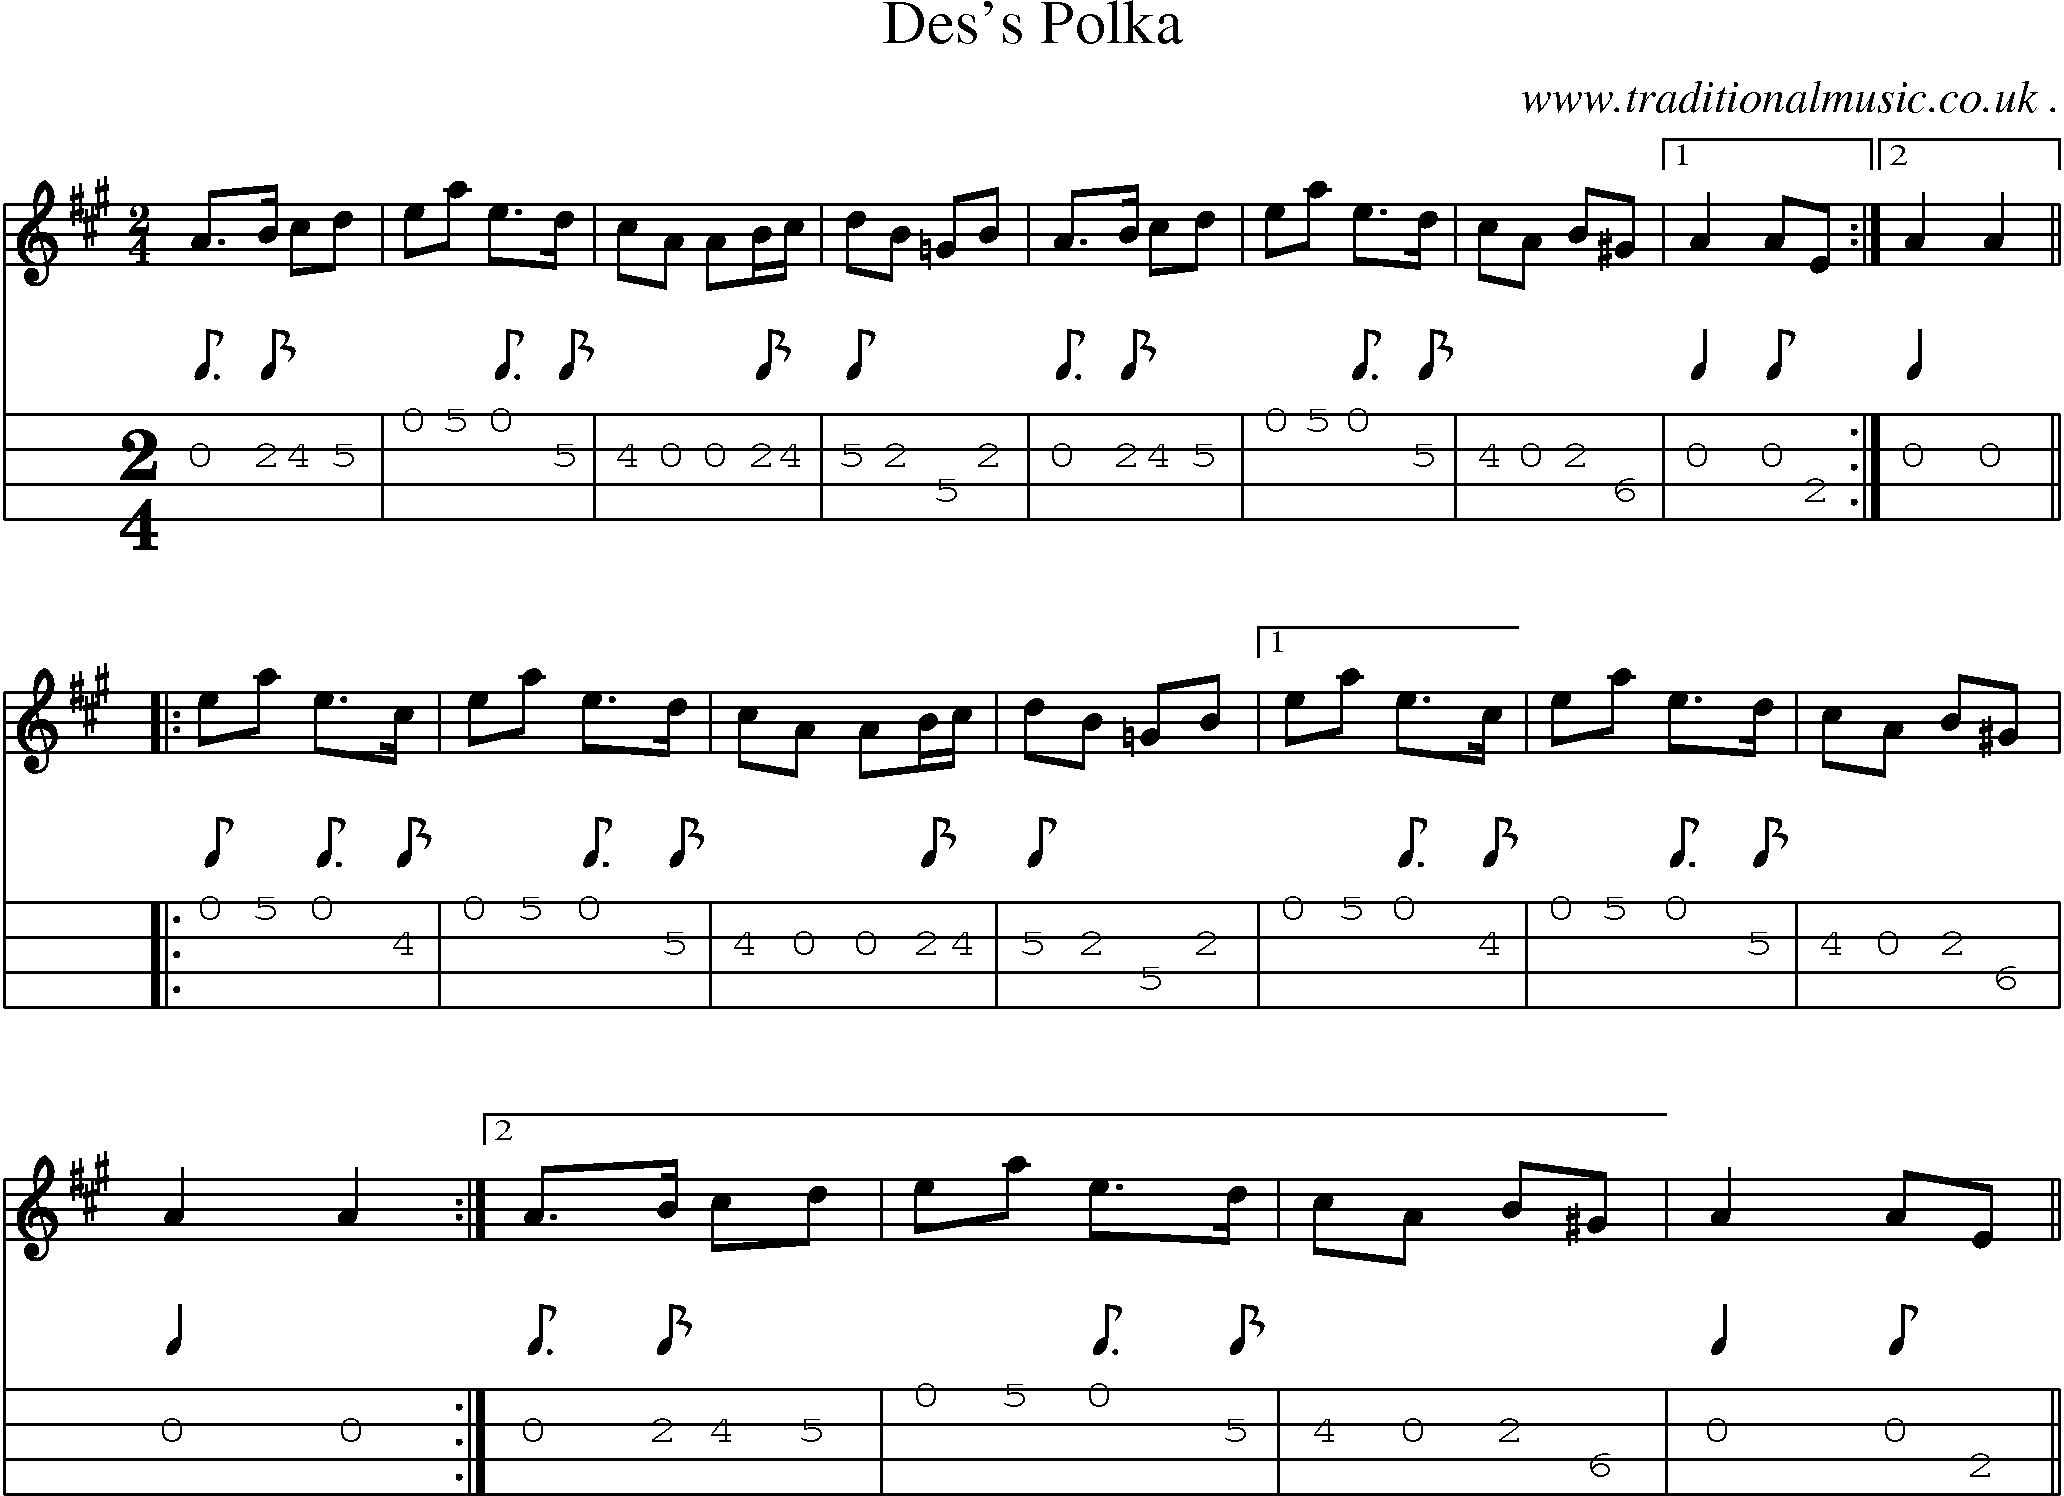 Sheet-Music and Mandolin Tabs for Dess Polka